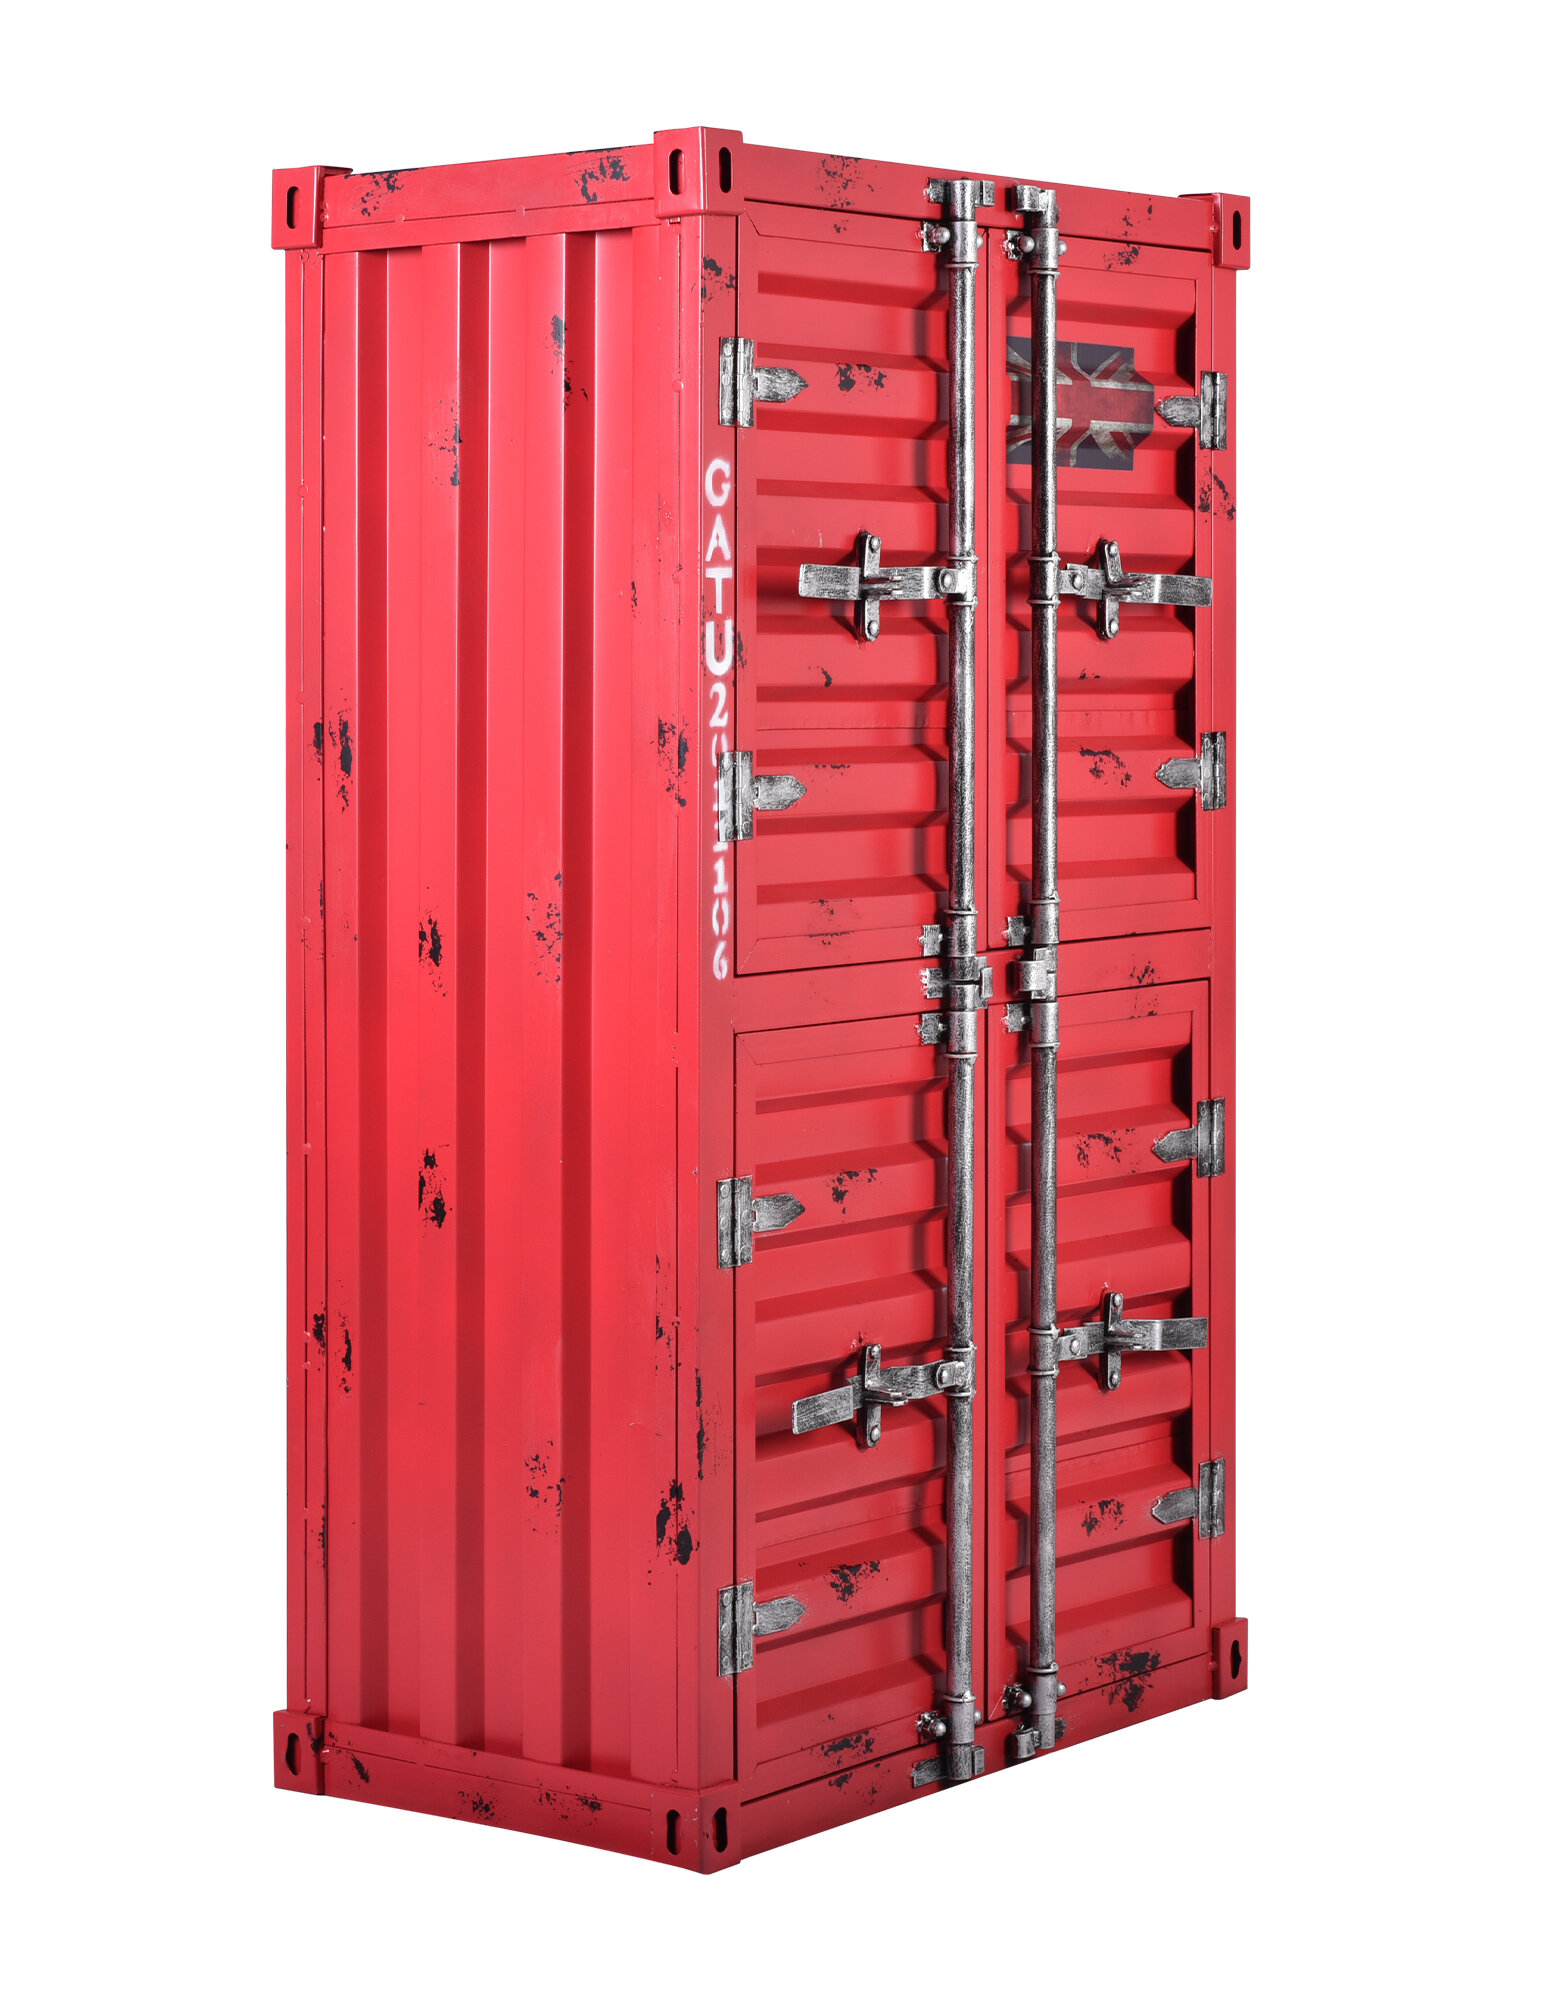 Wfx Utility Willowick 49 H X 29 W X 17 D Storage Garage Cabinet